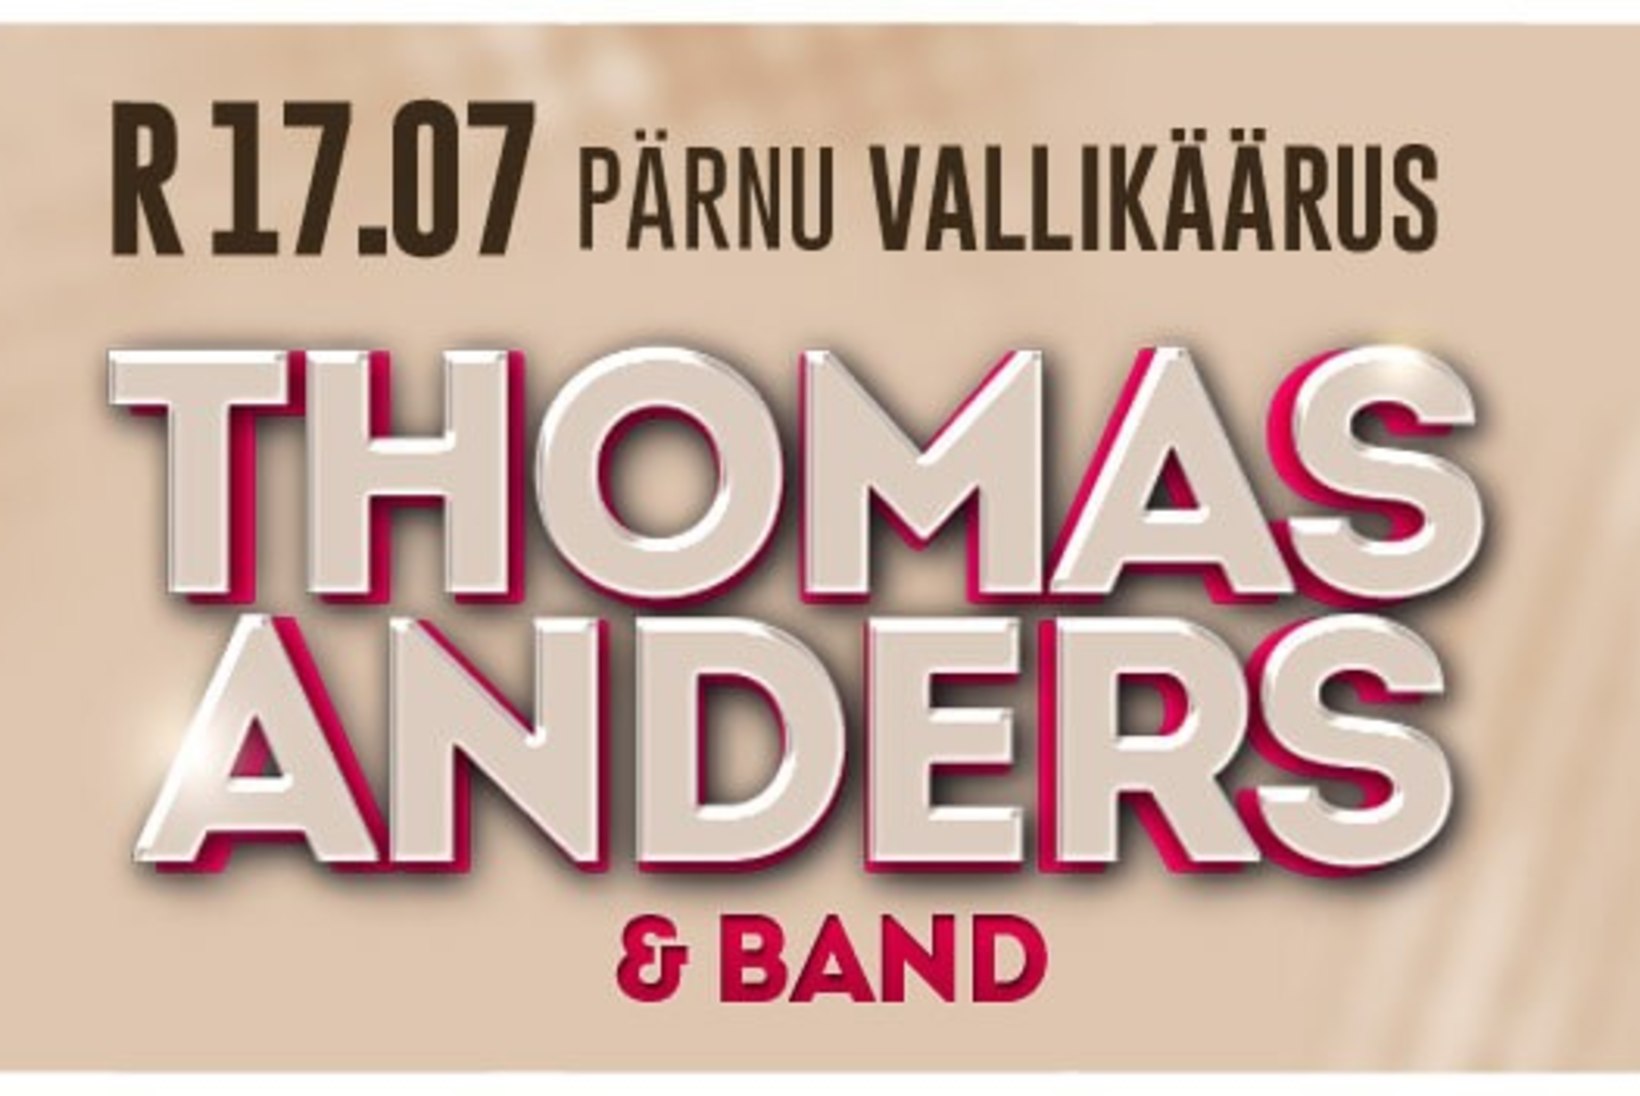 Reede õhtul, 17.juulil astub Pärnu Vallikäärus lavale üks ja ainsam ansambli Modern Talking artist Thomas Anders koos ansambliga!